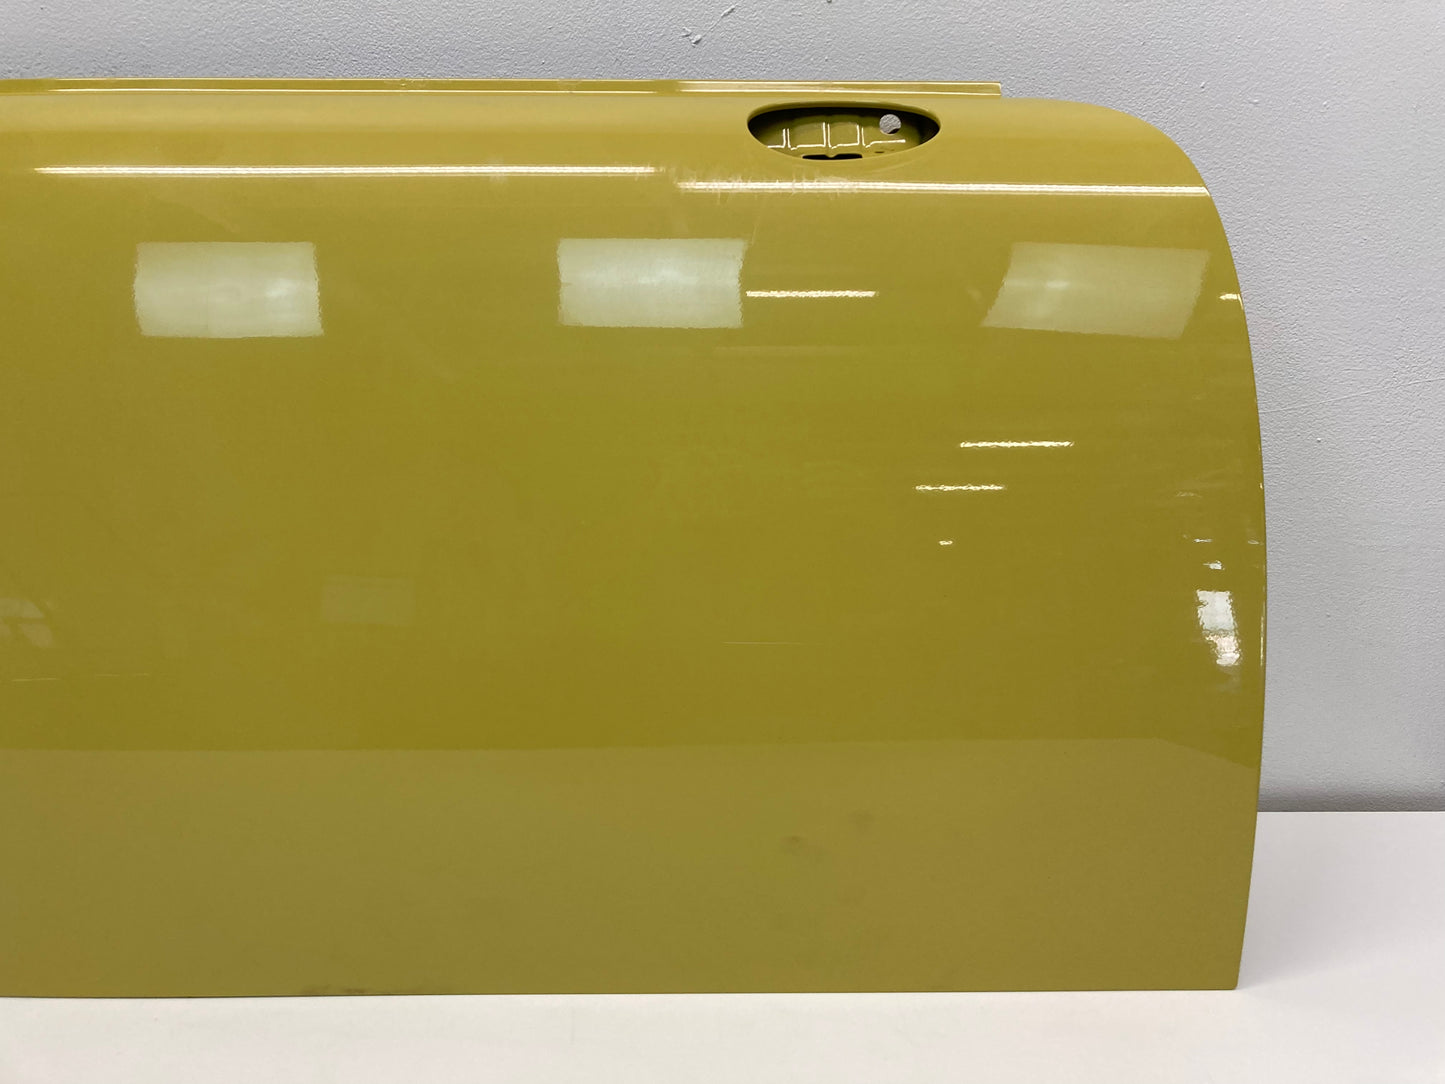 Mini Cooper Right Front Door Shell Interchange Yellow 41002755936 07-15 R5x 429